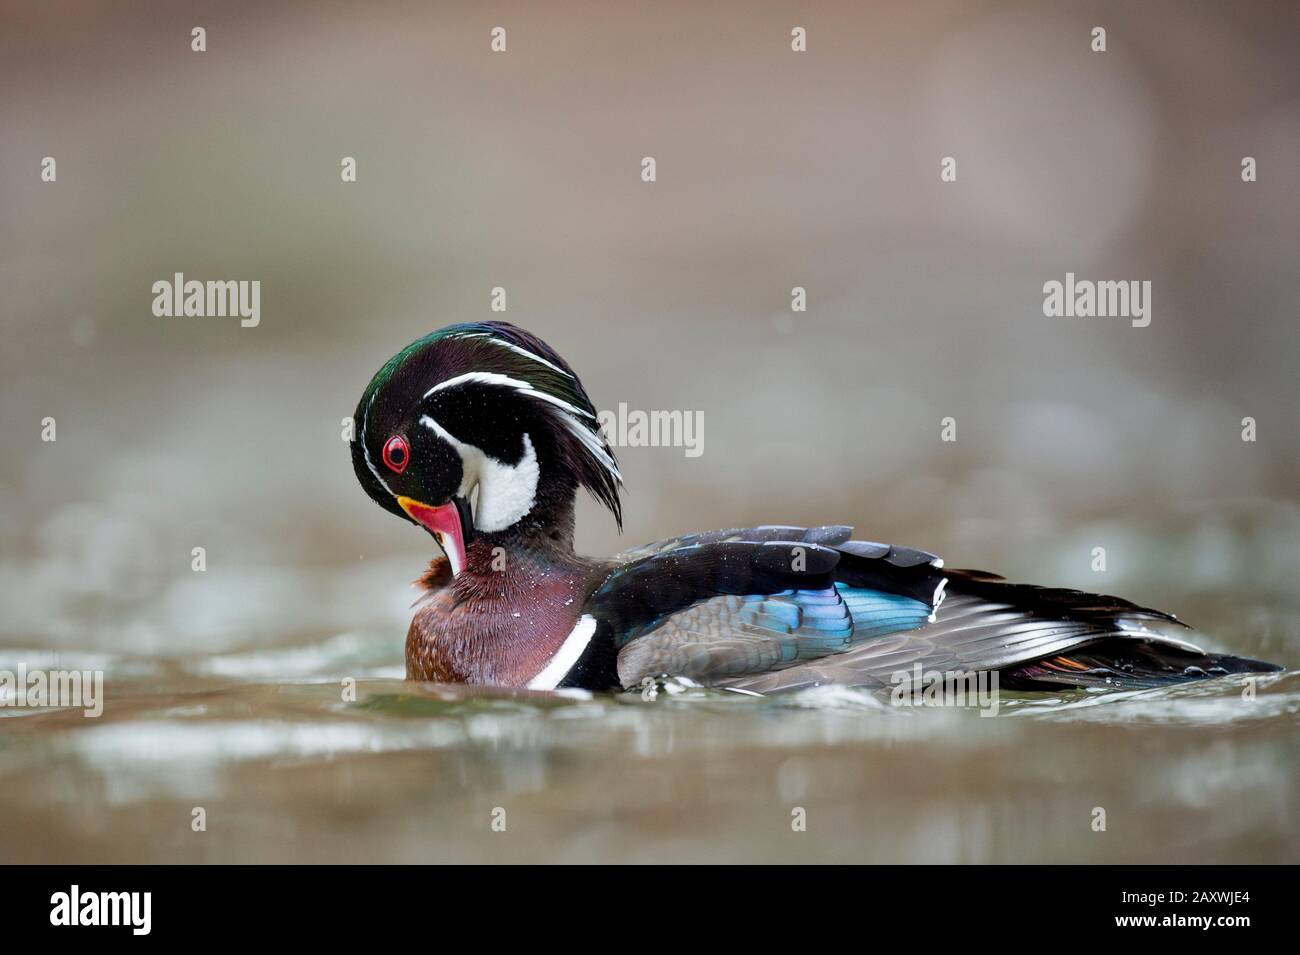 Ein farbenfroher, männlicher Holz-Duck, der in Wasser in weichem, übergiebeltem Licht mit einem glatten braunen Hintergrund schwimmt. Stockfoto